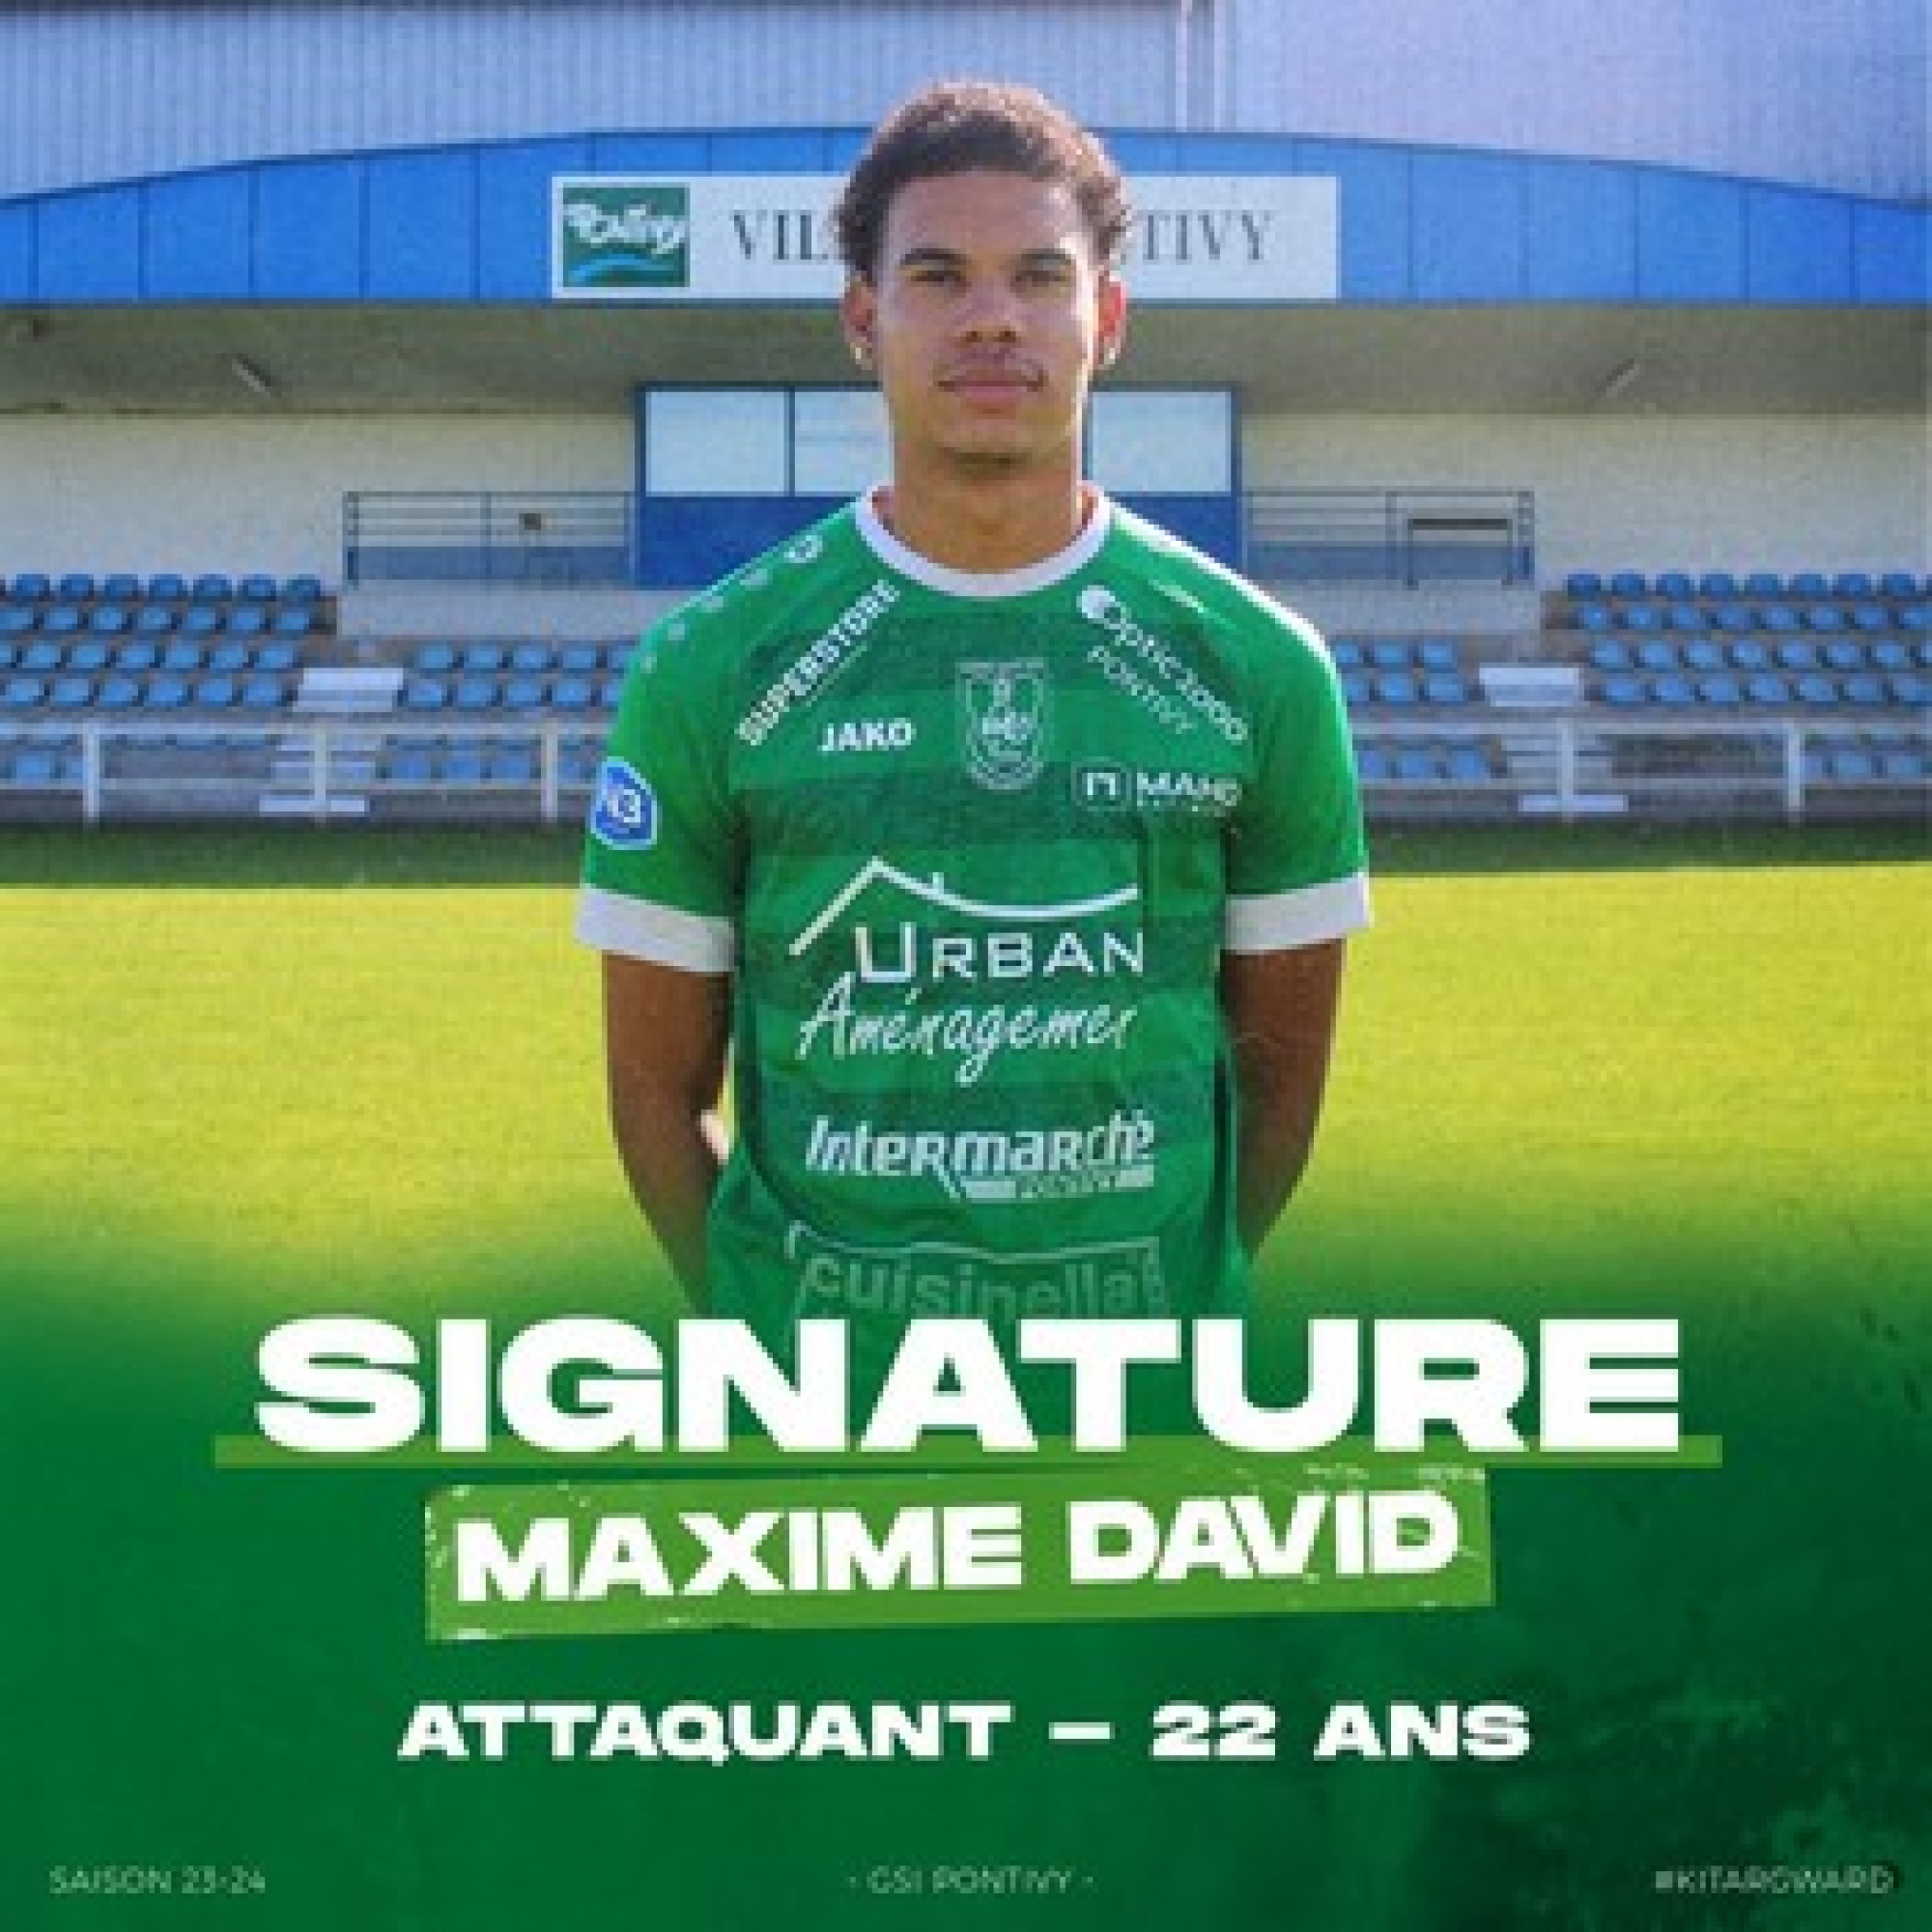 Maxime David